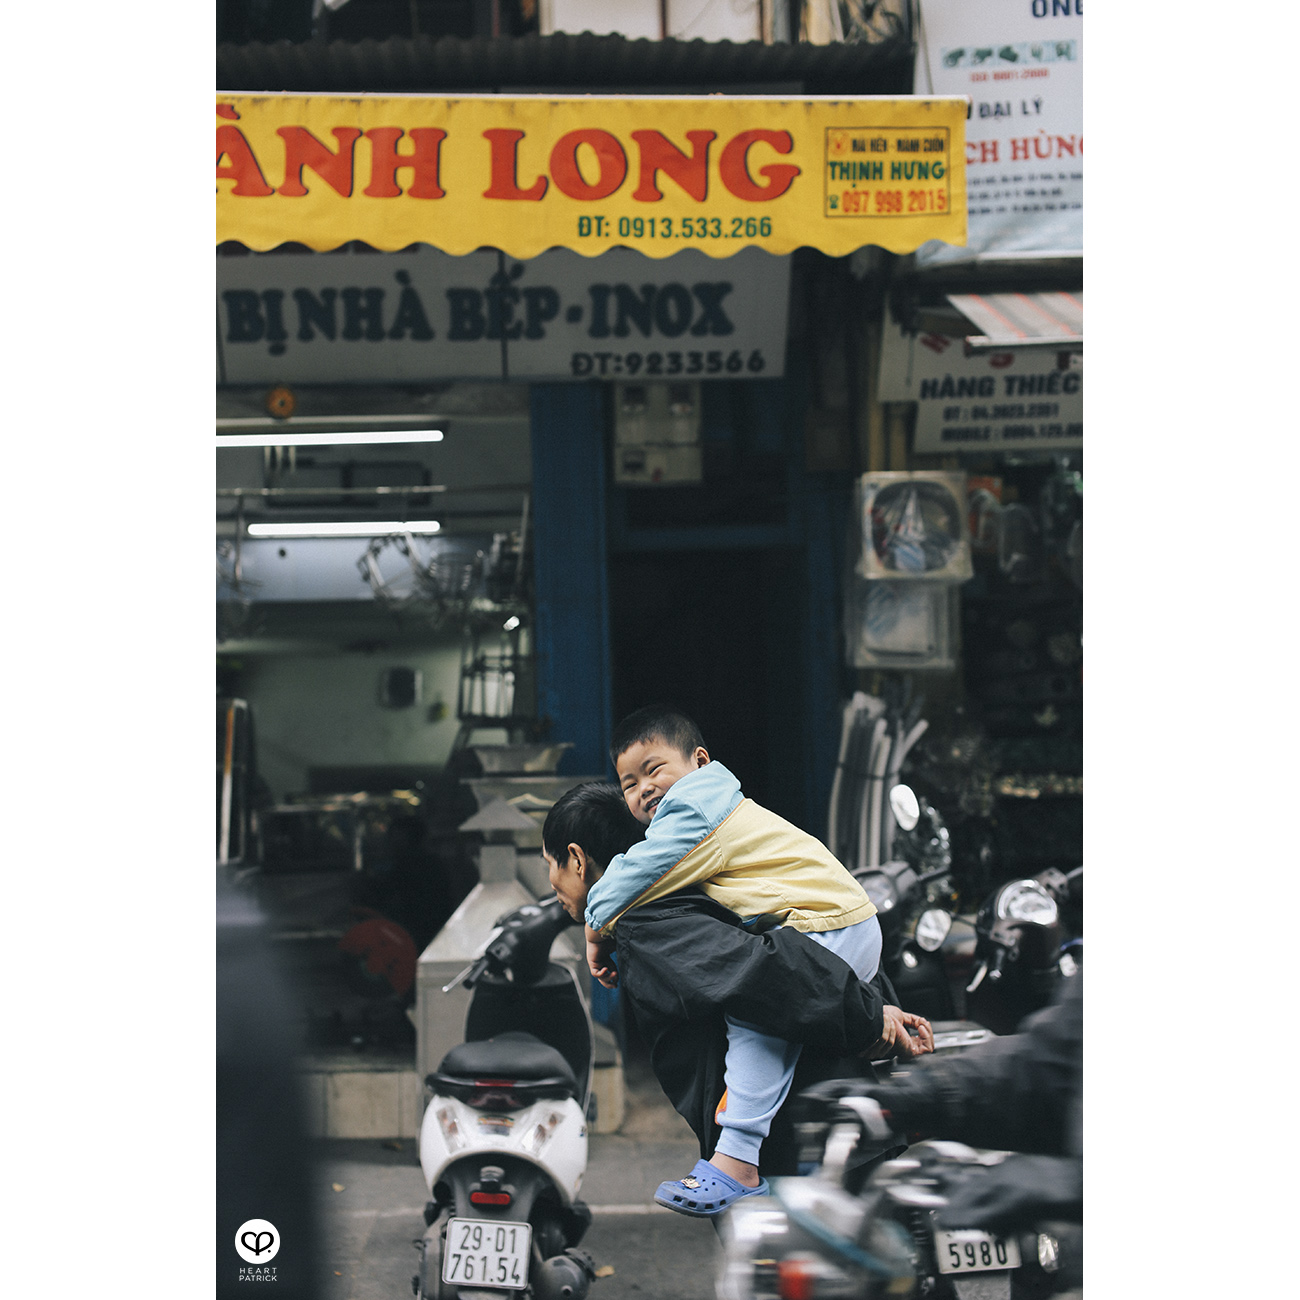 heartpatrick travel hanoi vietnam street photography